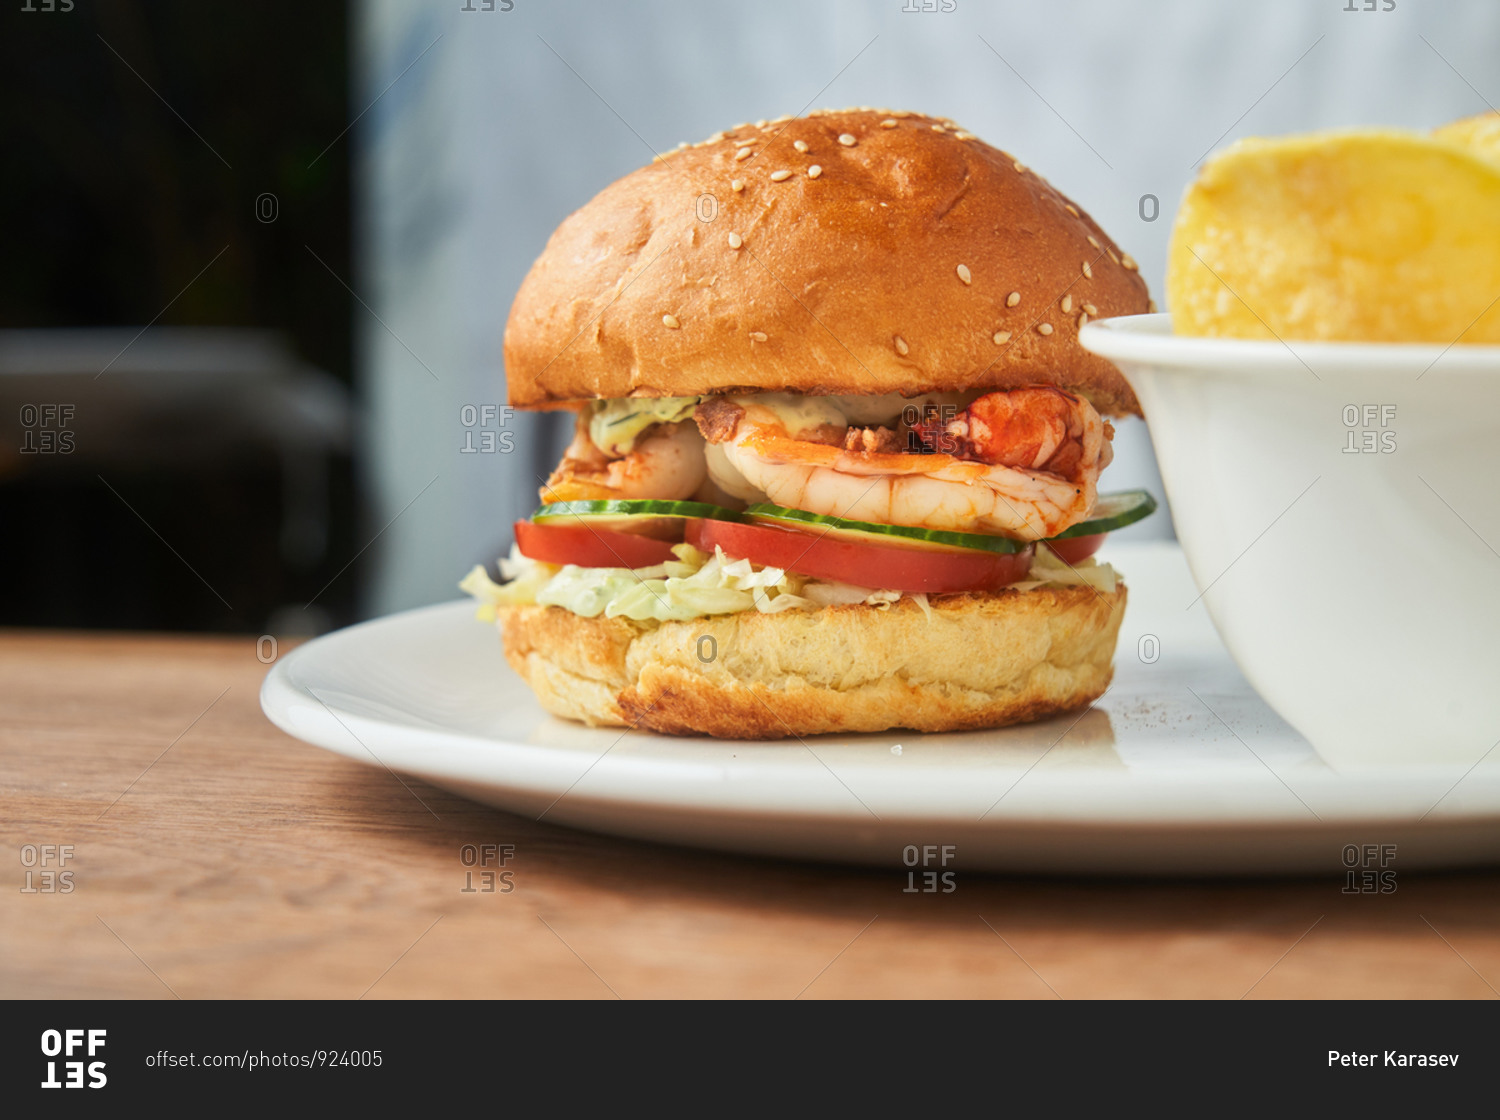 A shrimp sandwich with sesame seed bun